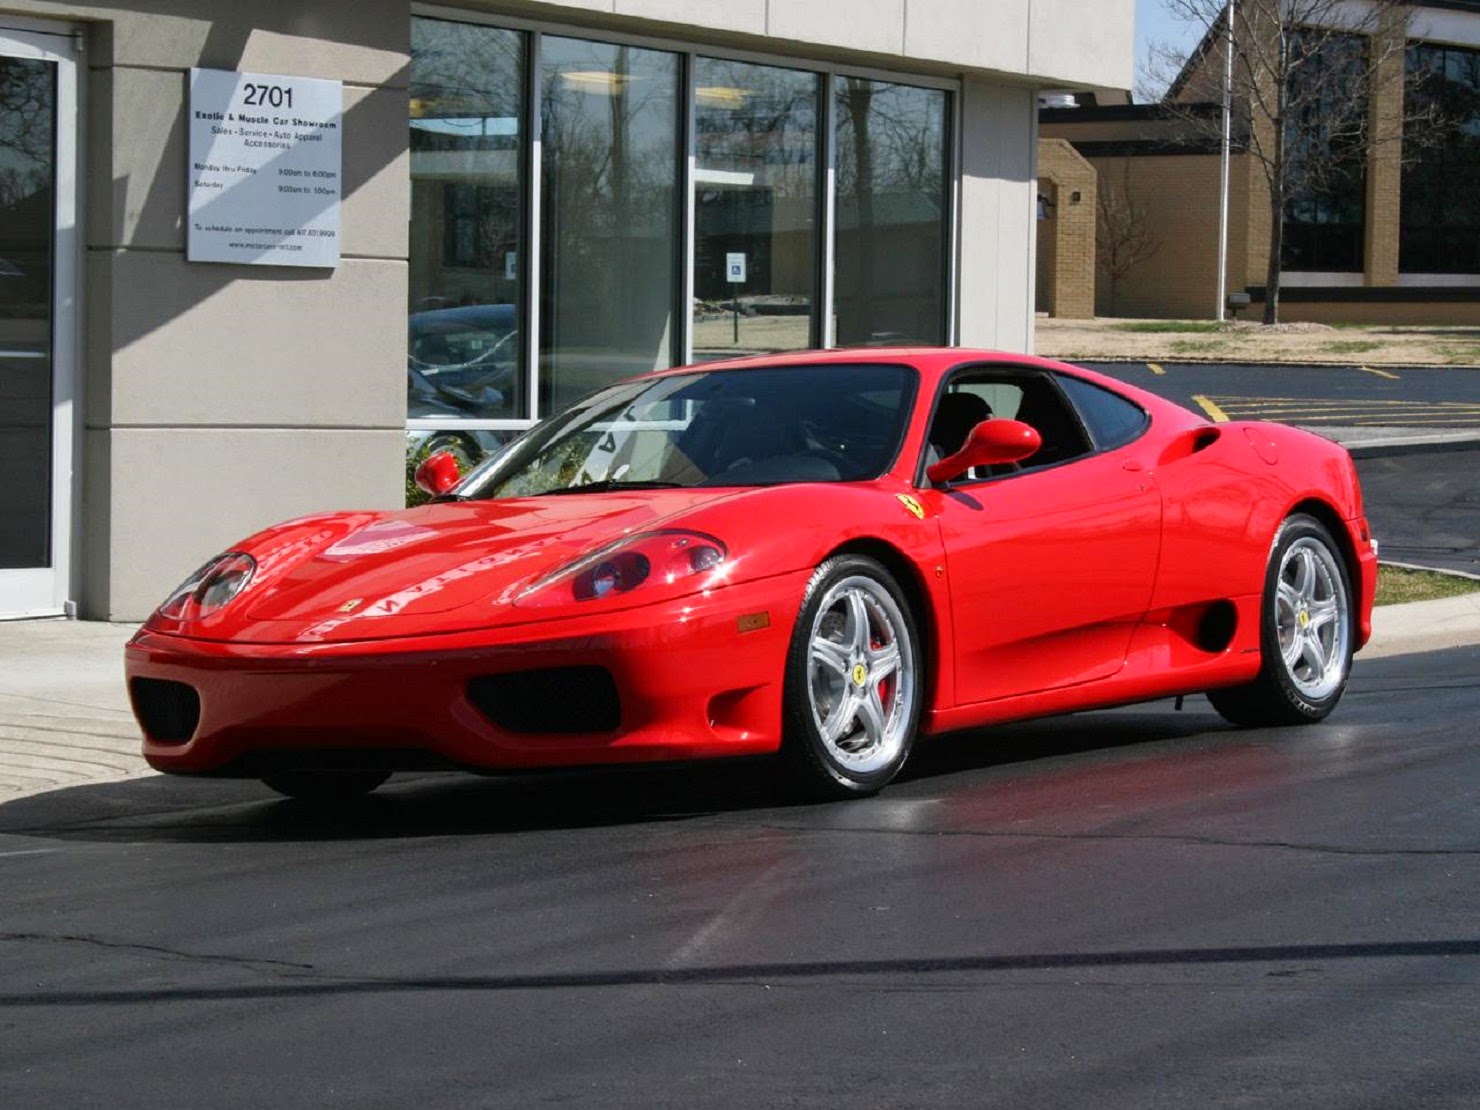  Daftar  Harga Mobil  Ferrari  Terbaru